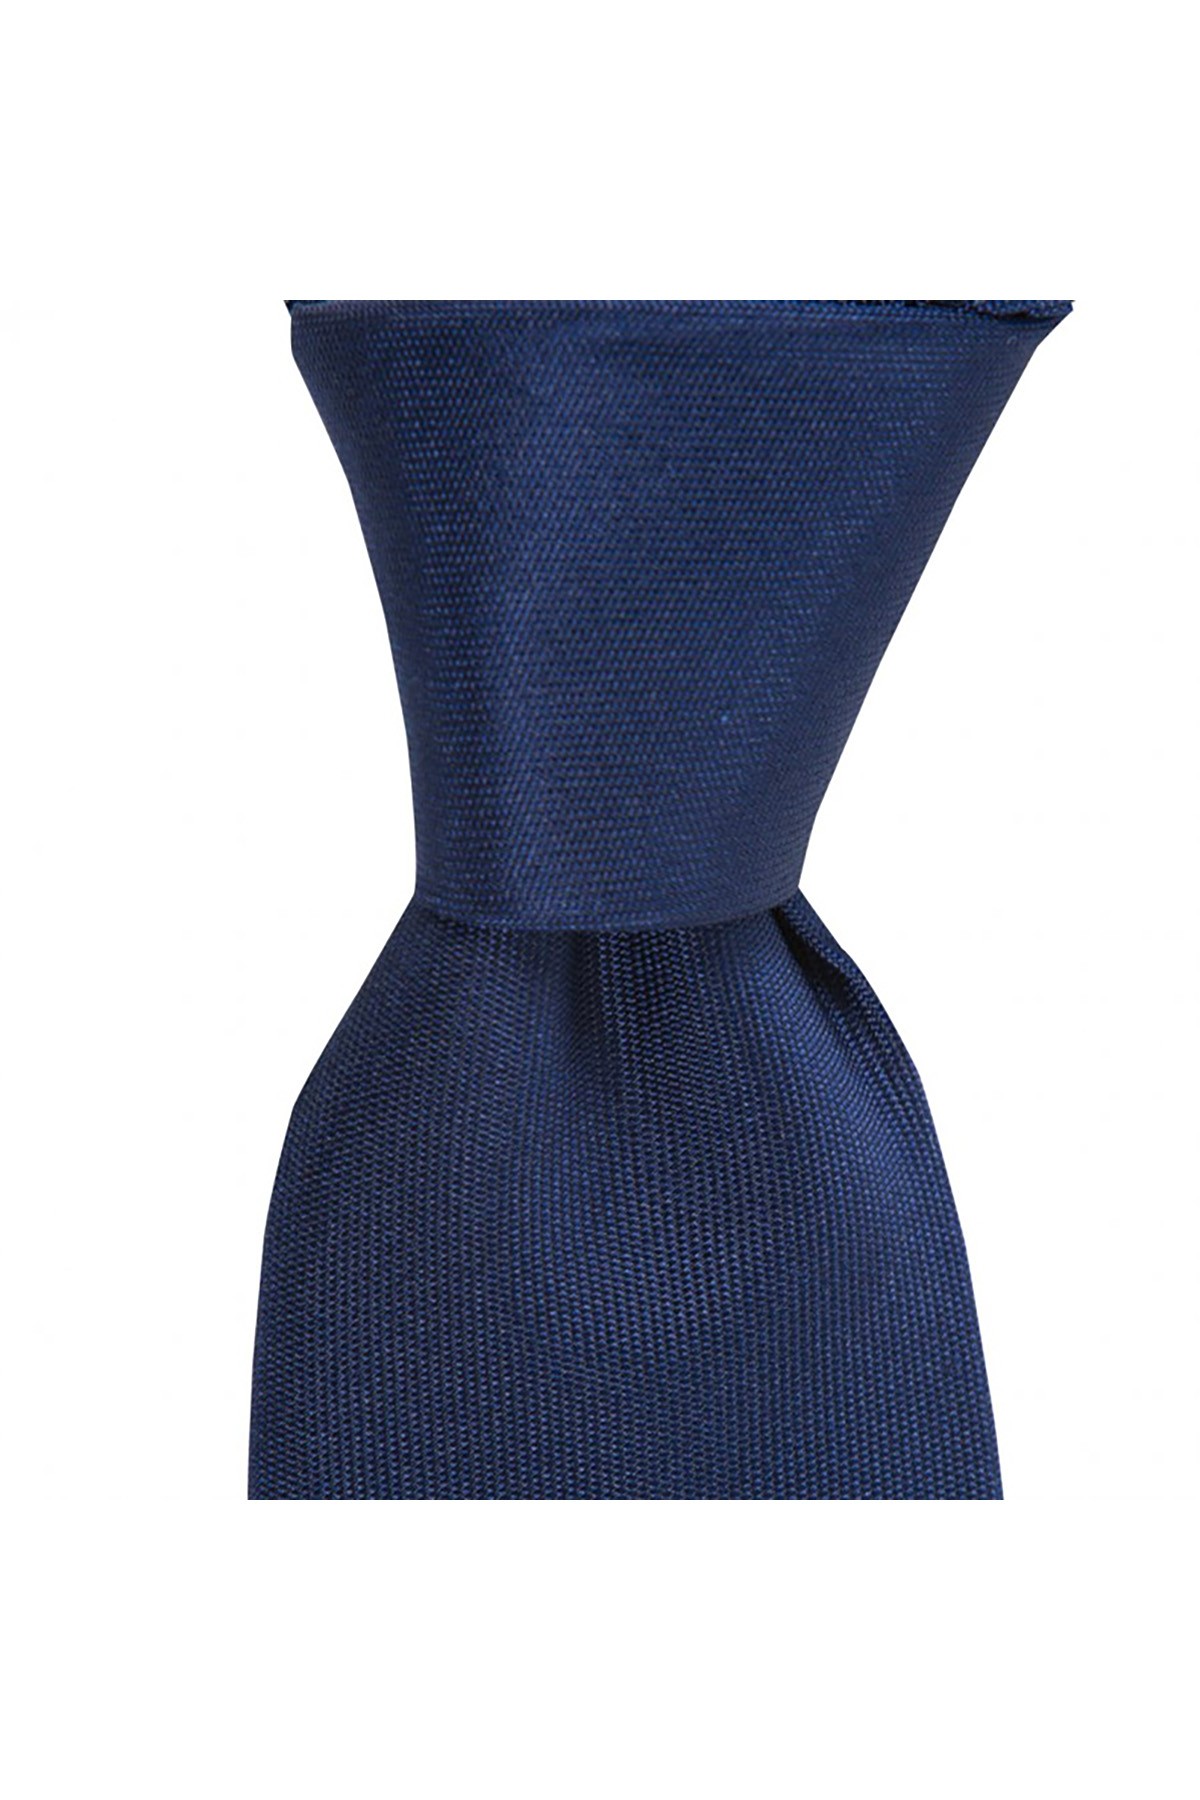 7,5 cm genişliğinde mikro desenli  klasik ipek kravat - Lacivert